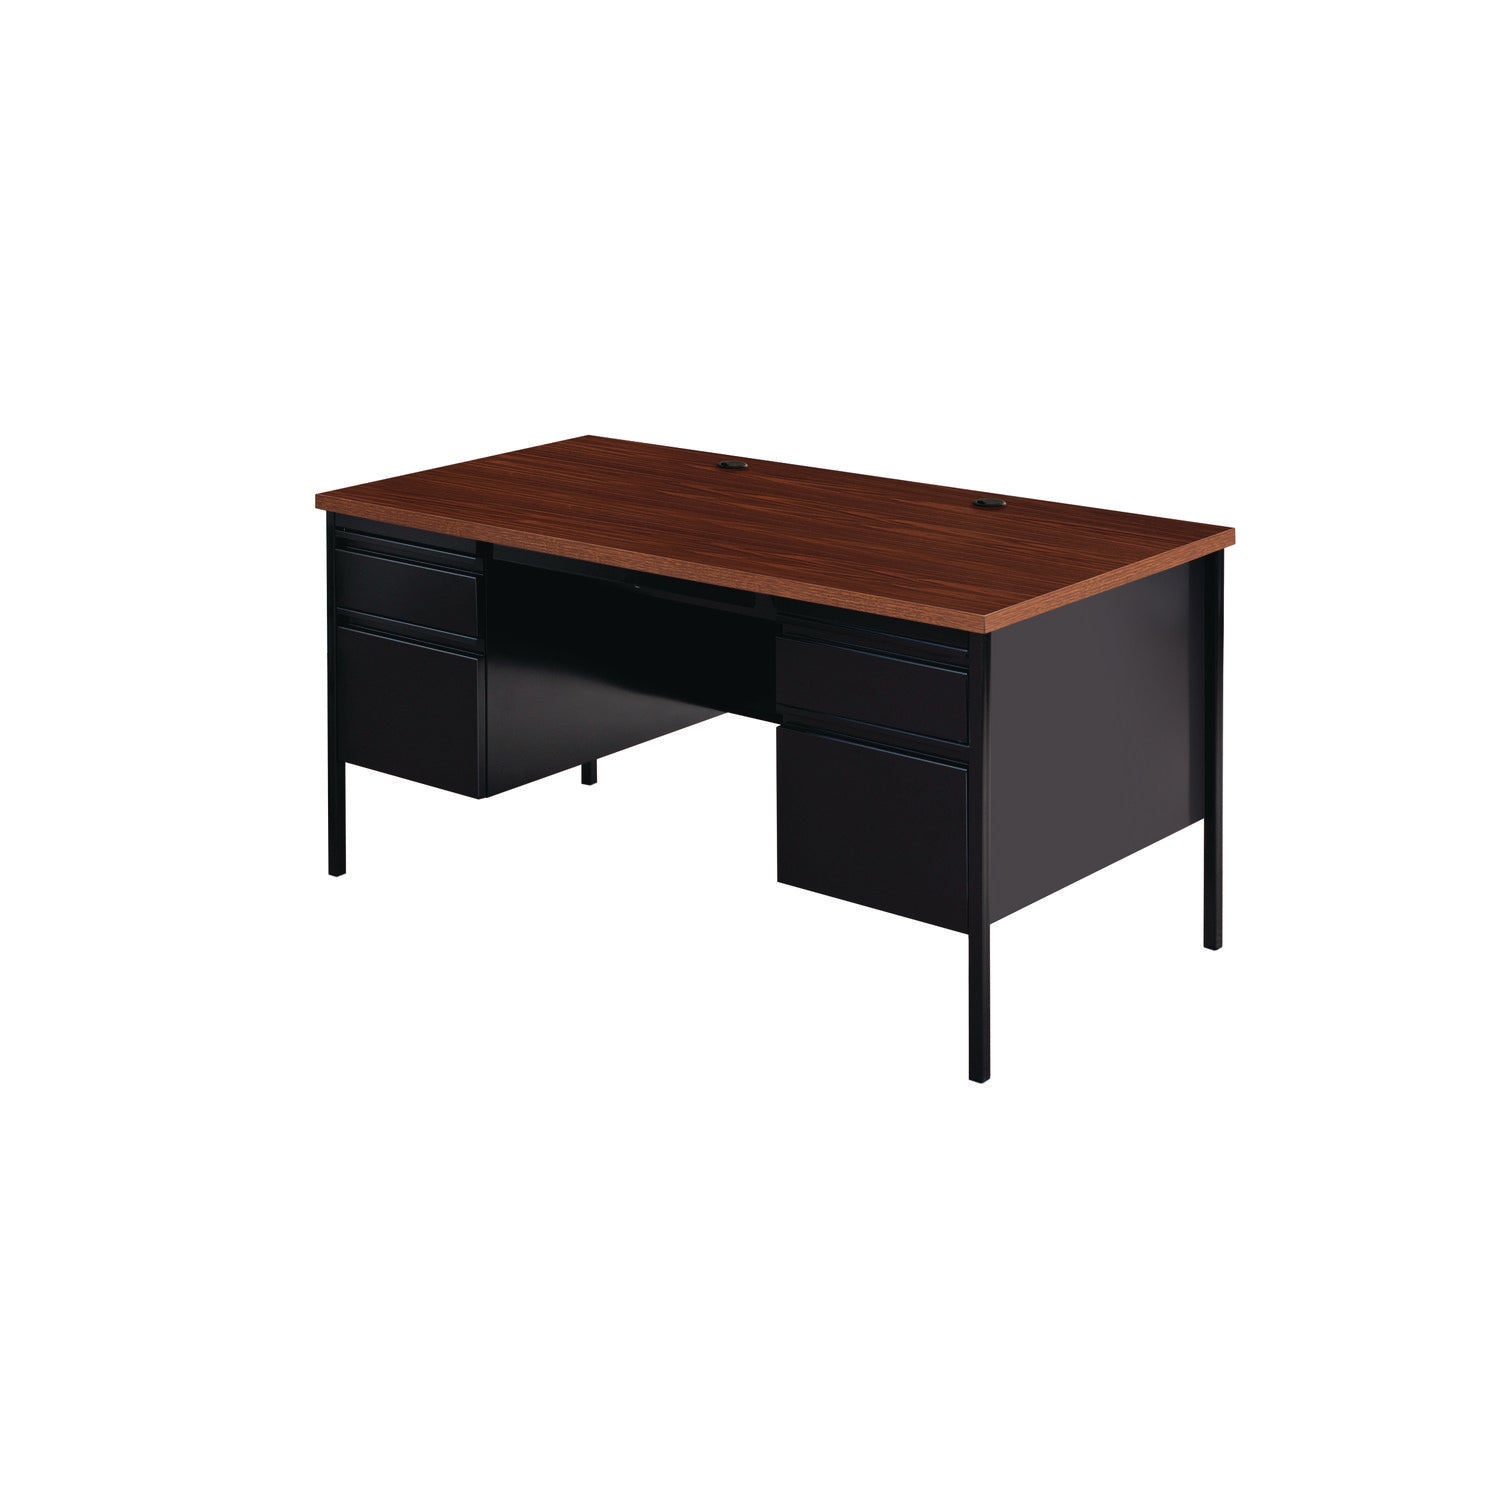 double-pedestal-steel-desk-60-x-30-x-295-mocha-black-black-legs_alehsd6030bm - 2